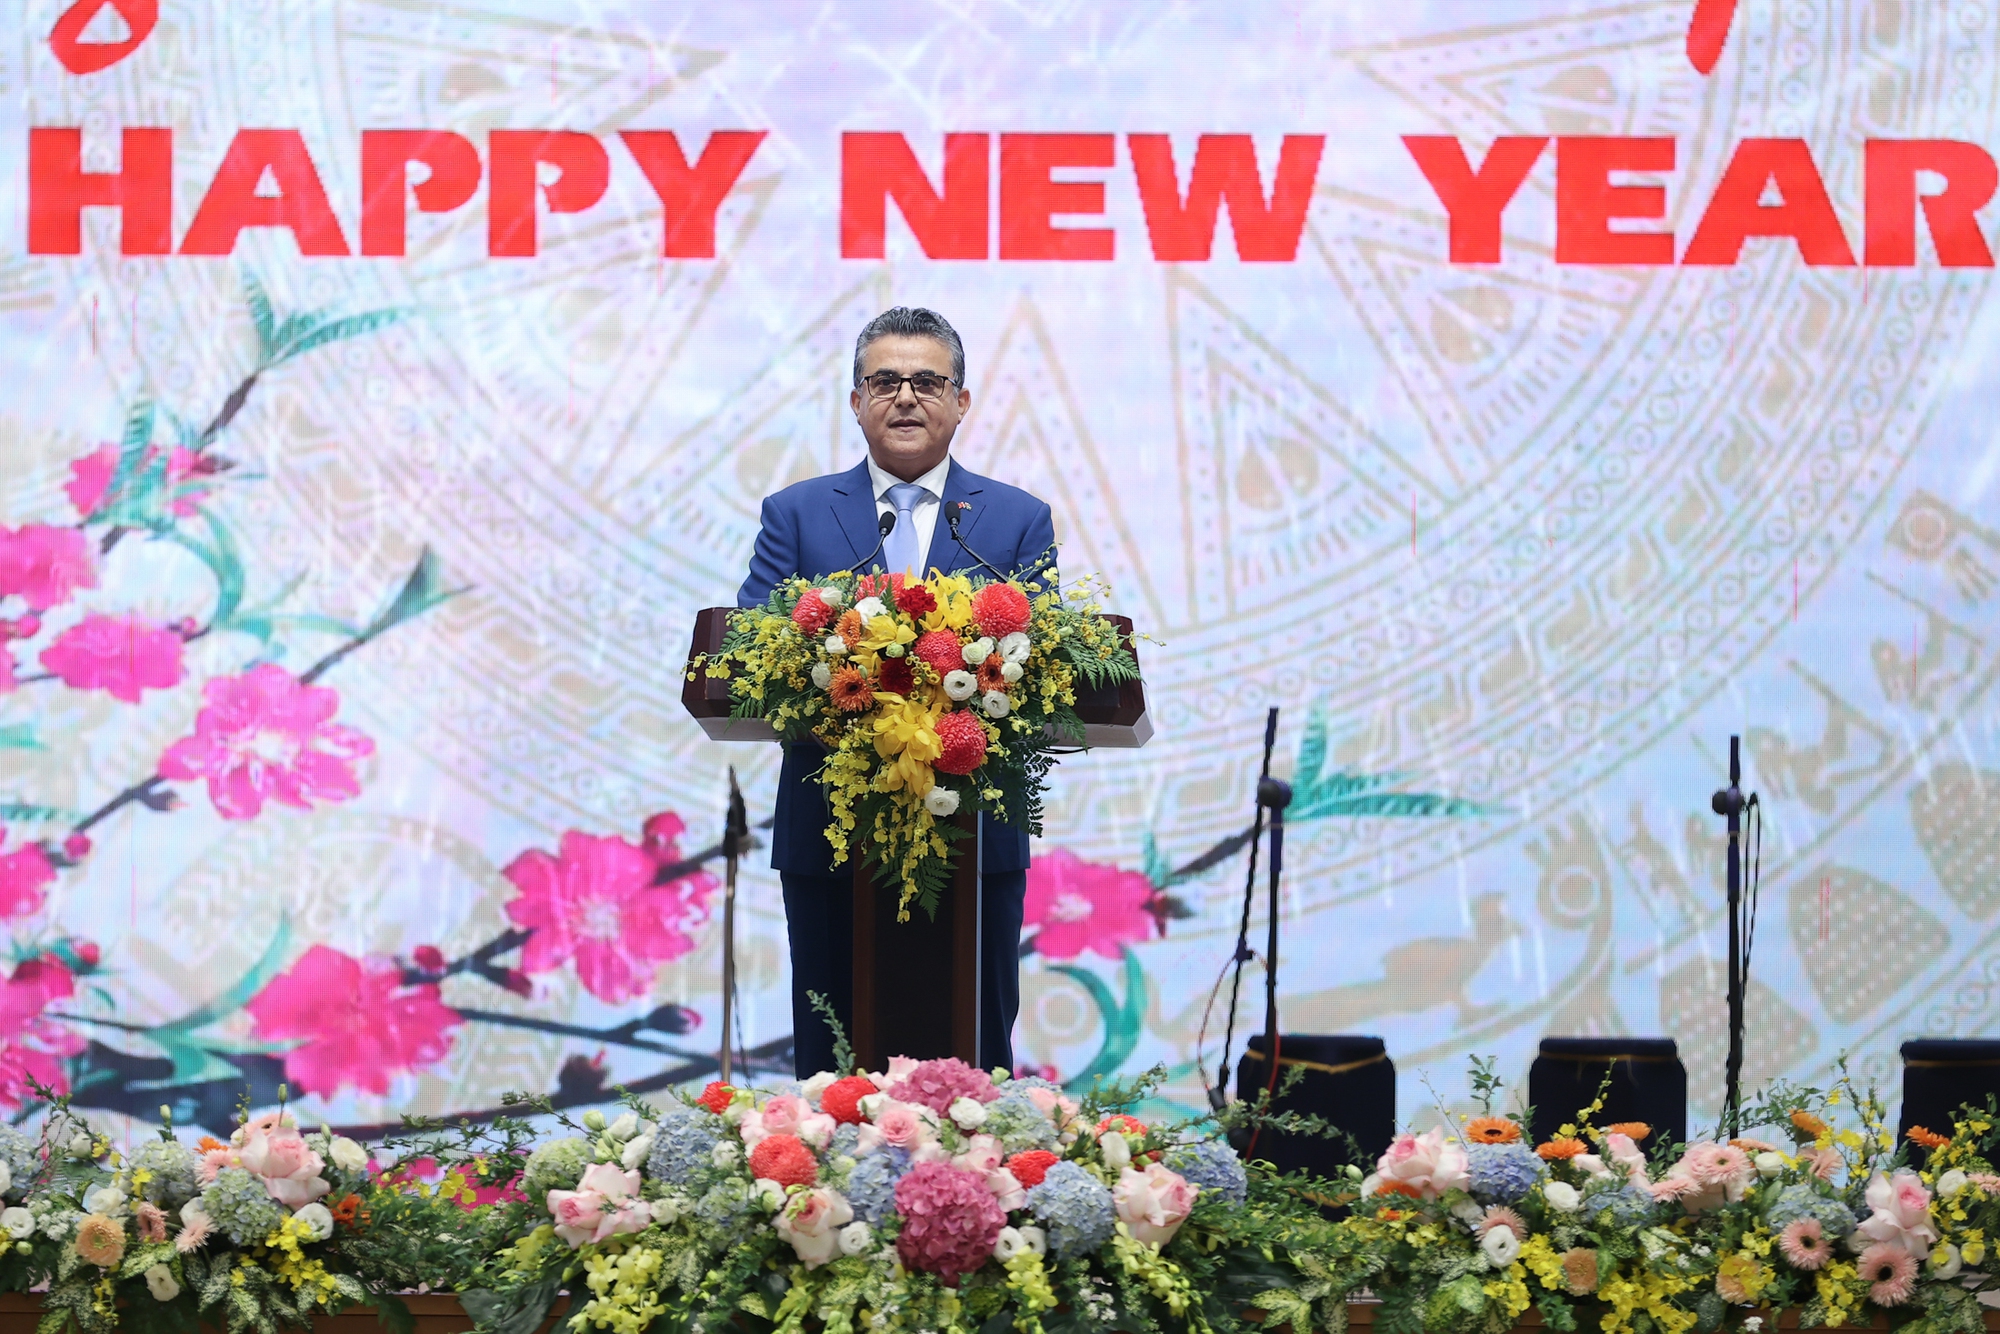 Thay mặt các Đại sứ, Đại biện, Trưởng đại diện các tổ chức quốc tế tại Hà Nội, Đại sứ Nhà nước Palestine, Trưởng Đoàn Ngoại giao tại Việt Nam - Ngài Saadi Salama chúc mừng những thành tựu và dấu ấn quan trọng của Việt Nam trong năm 2023 - Ảnh: VGP/Nhật Bắc